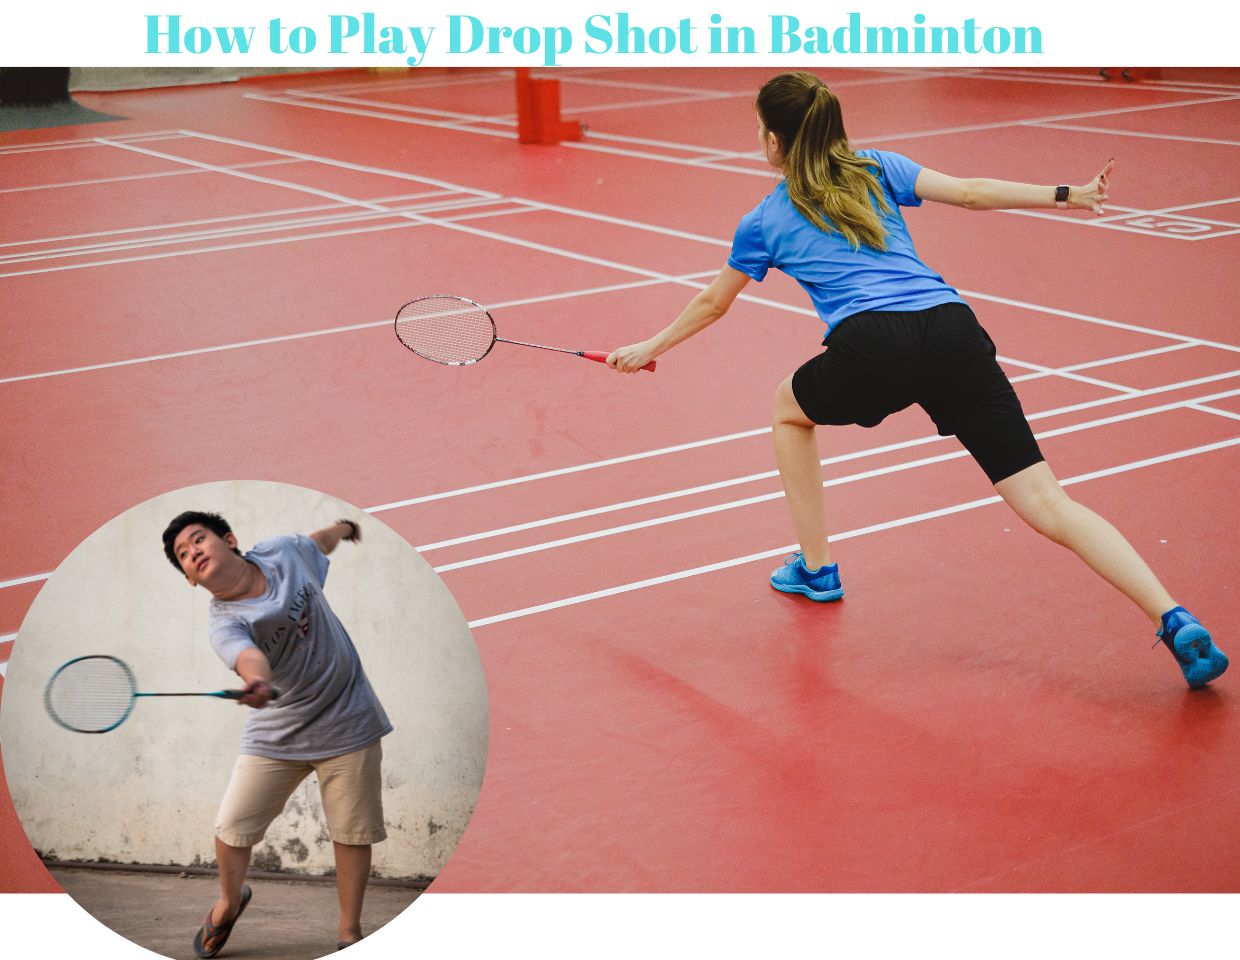 Drop Shot in Badminton